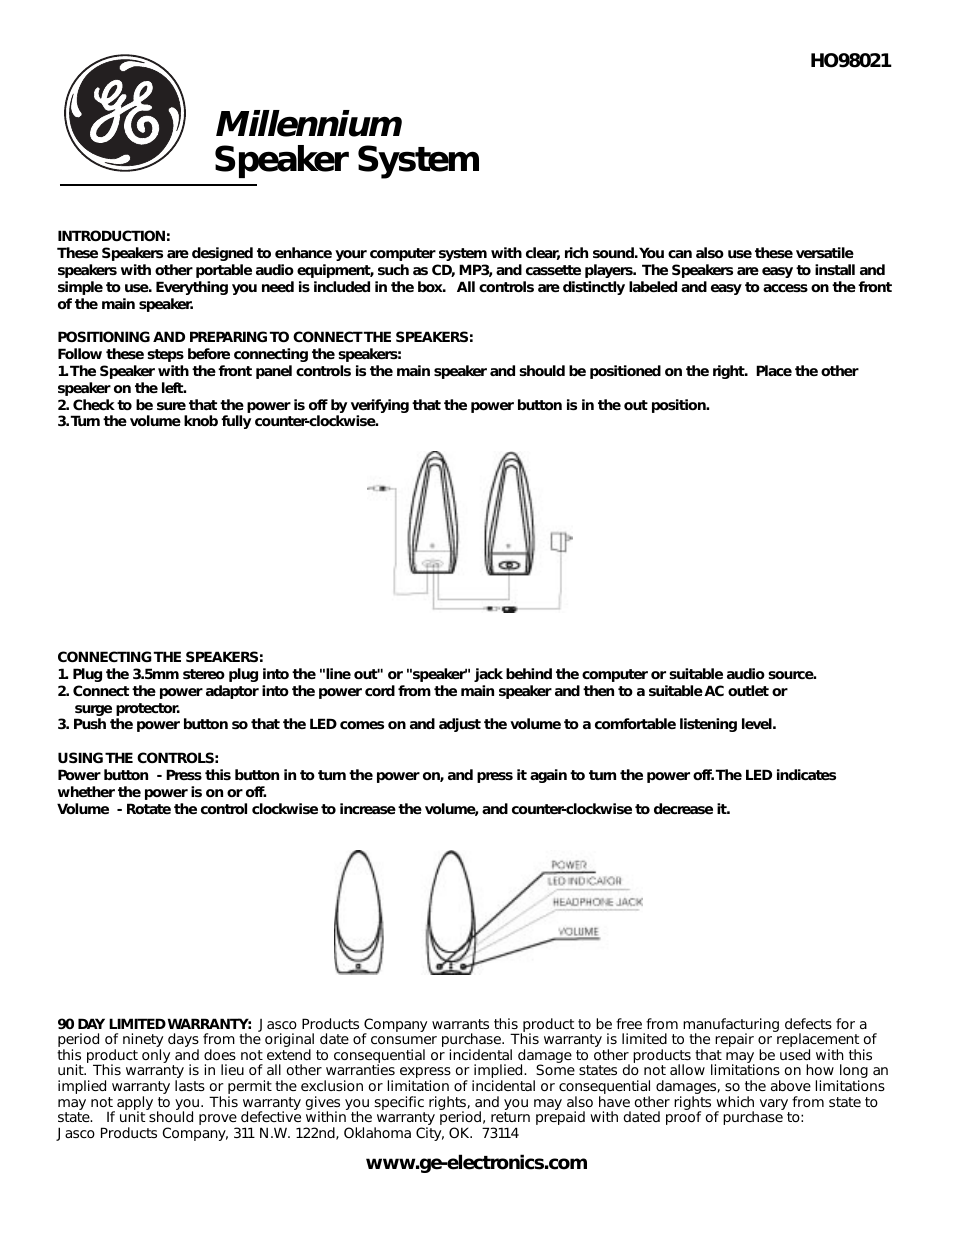 98021 GE Millennium Speaker System